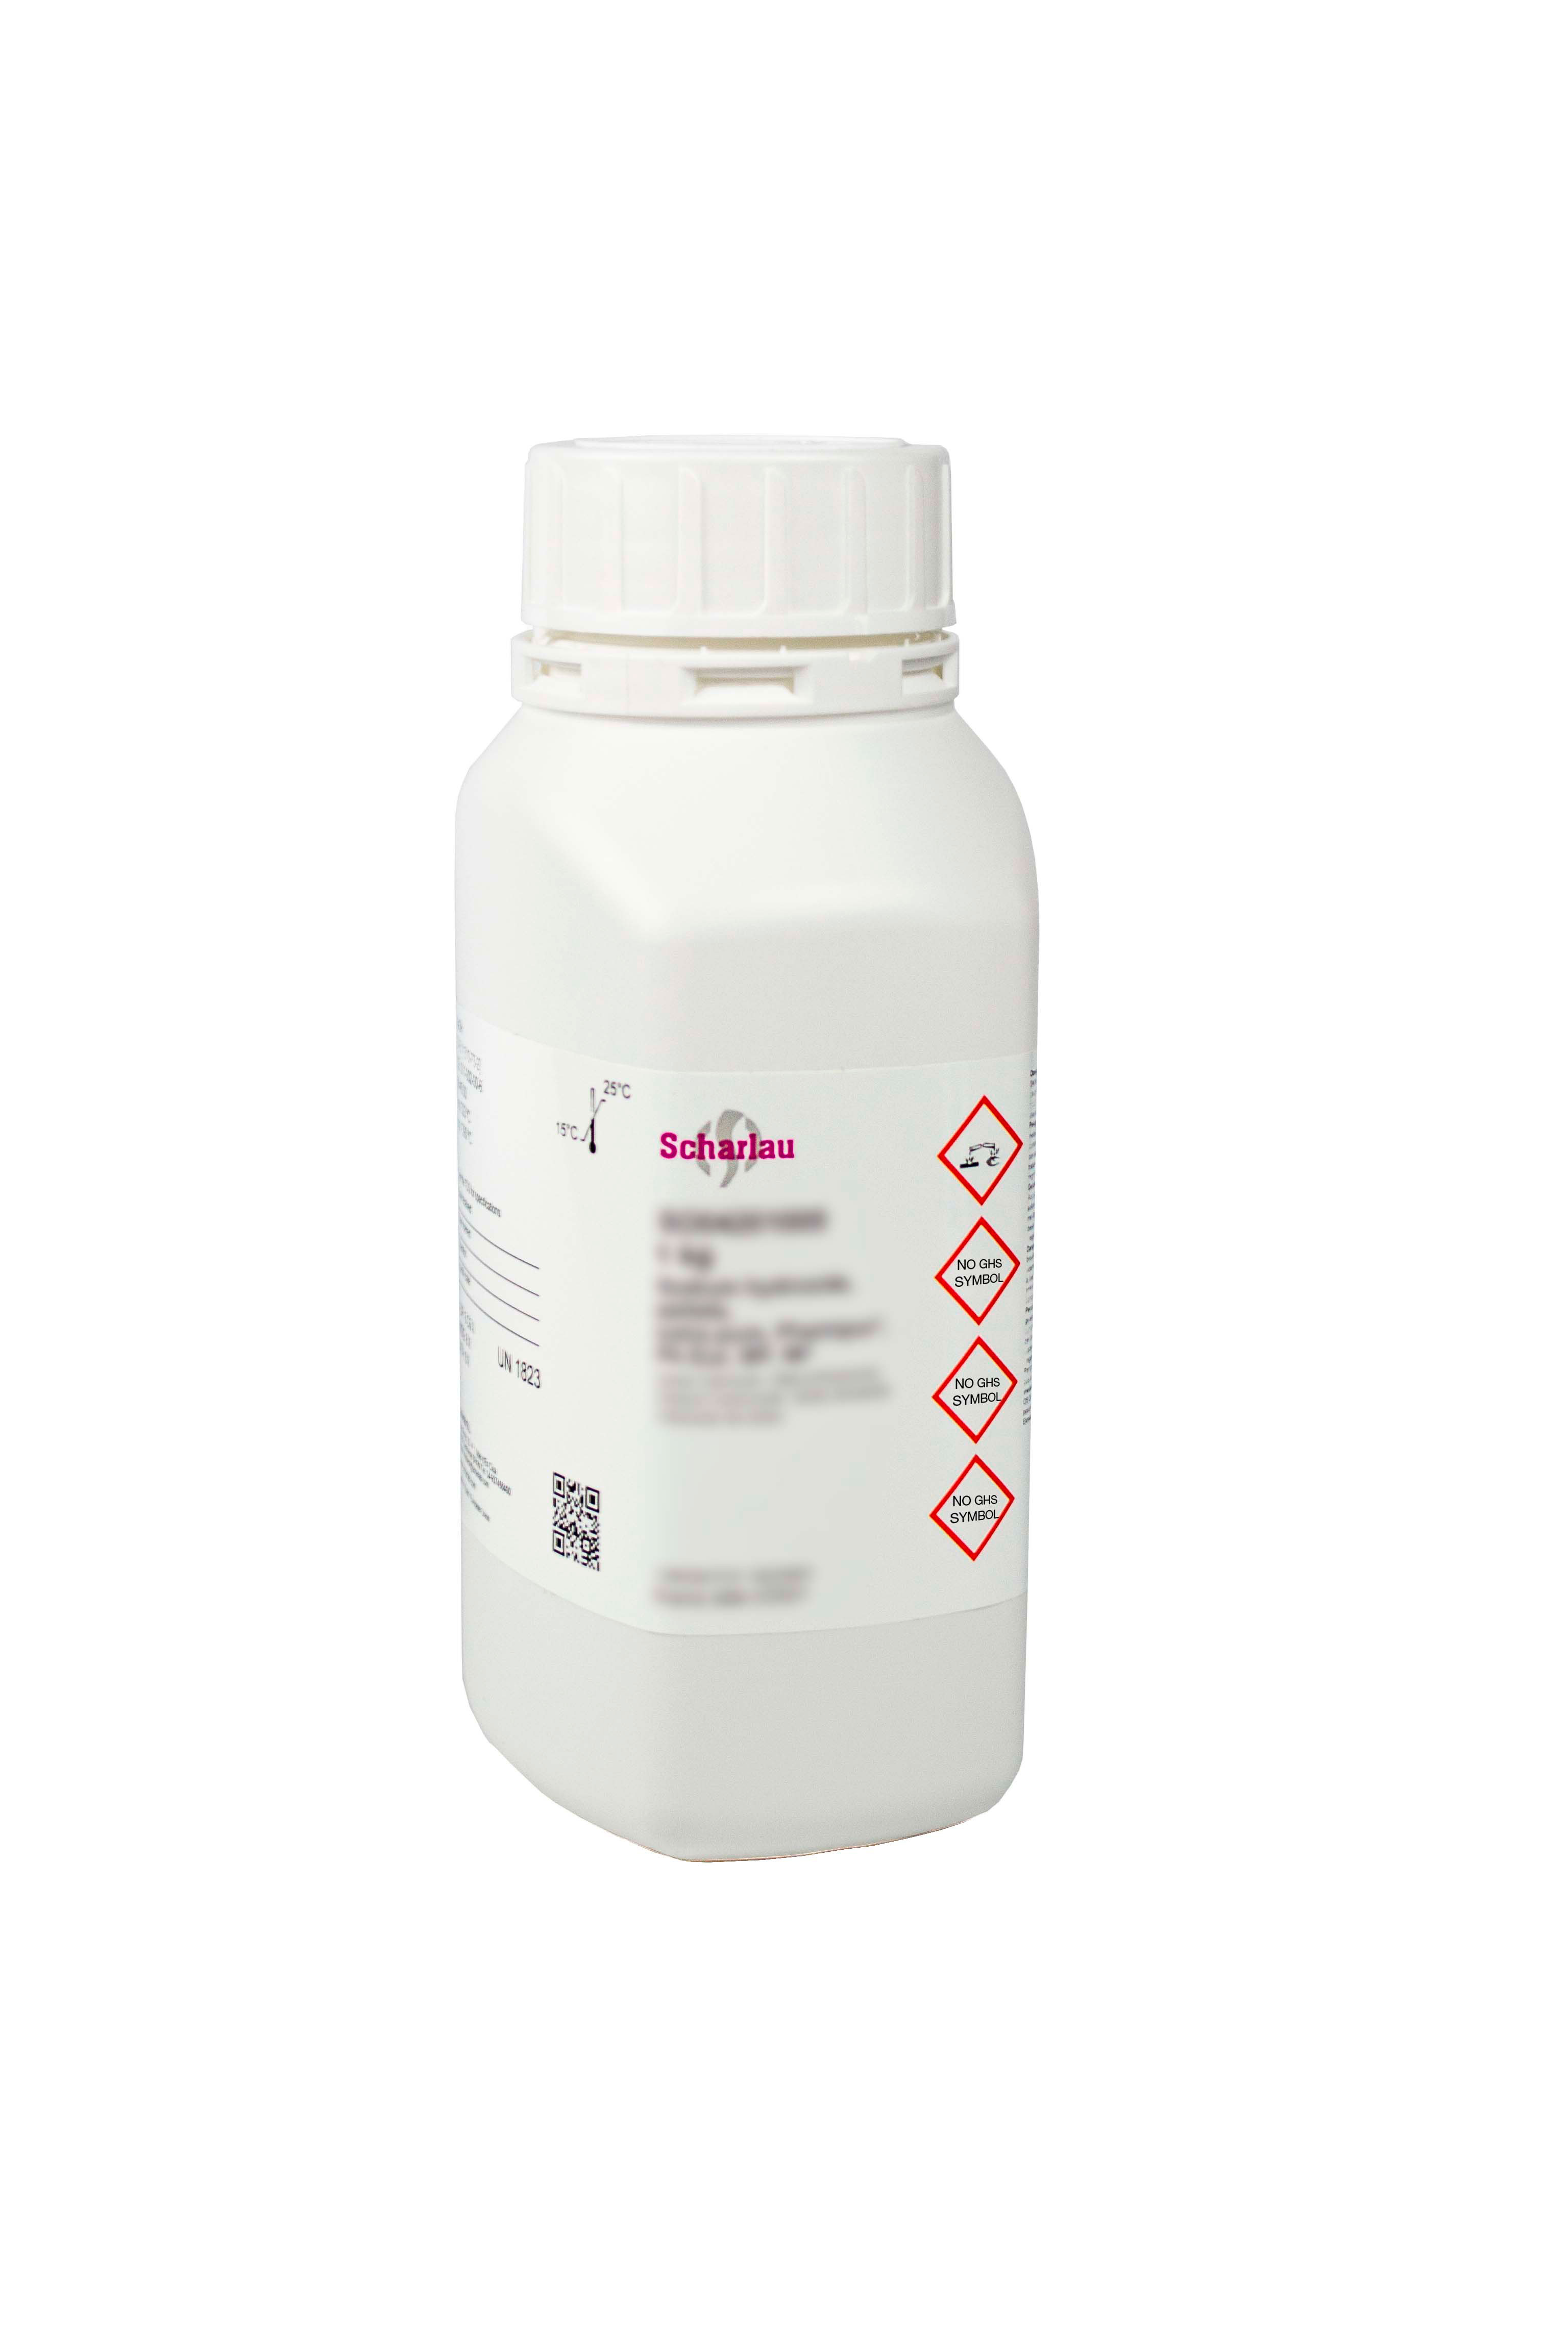 Amonio heptamolibdato tetrahidrato, Pharmpur®, USP